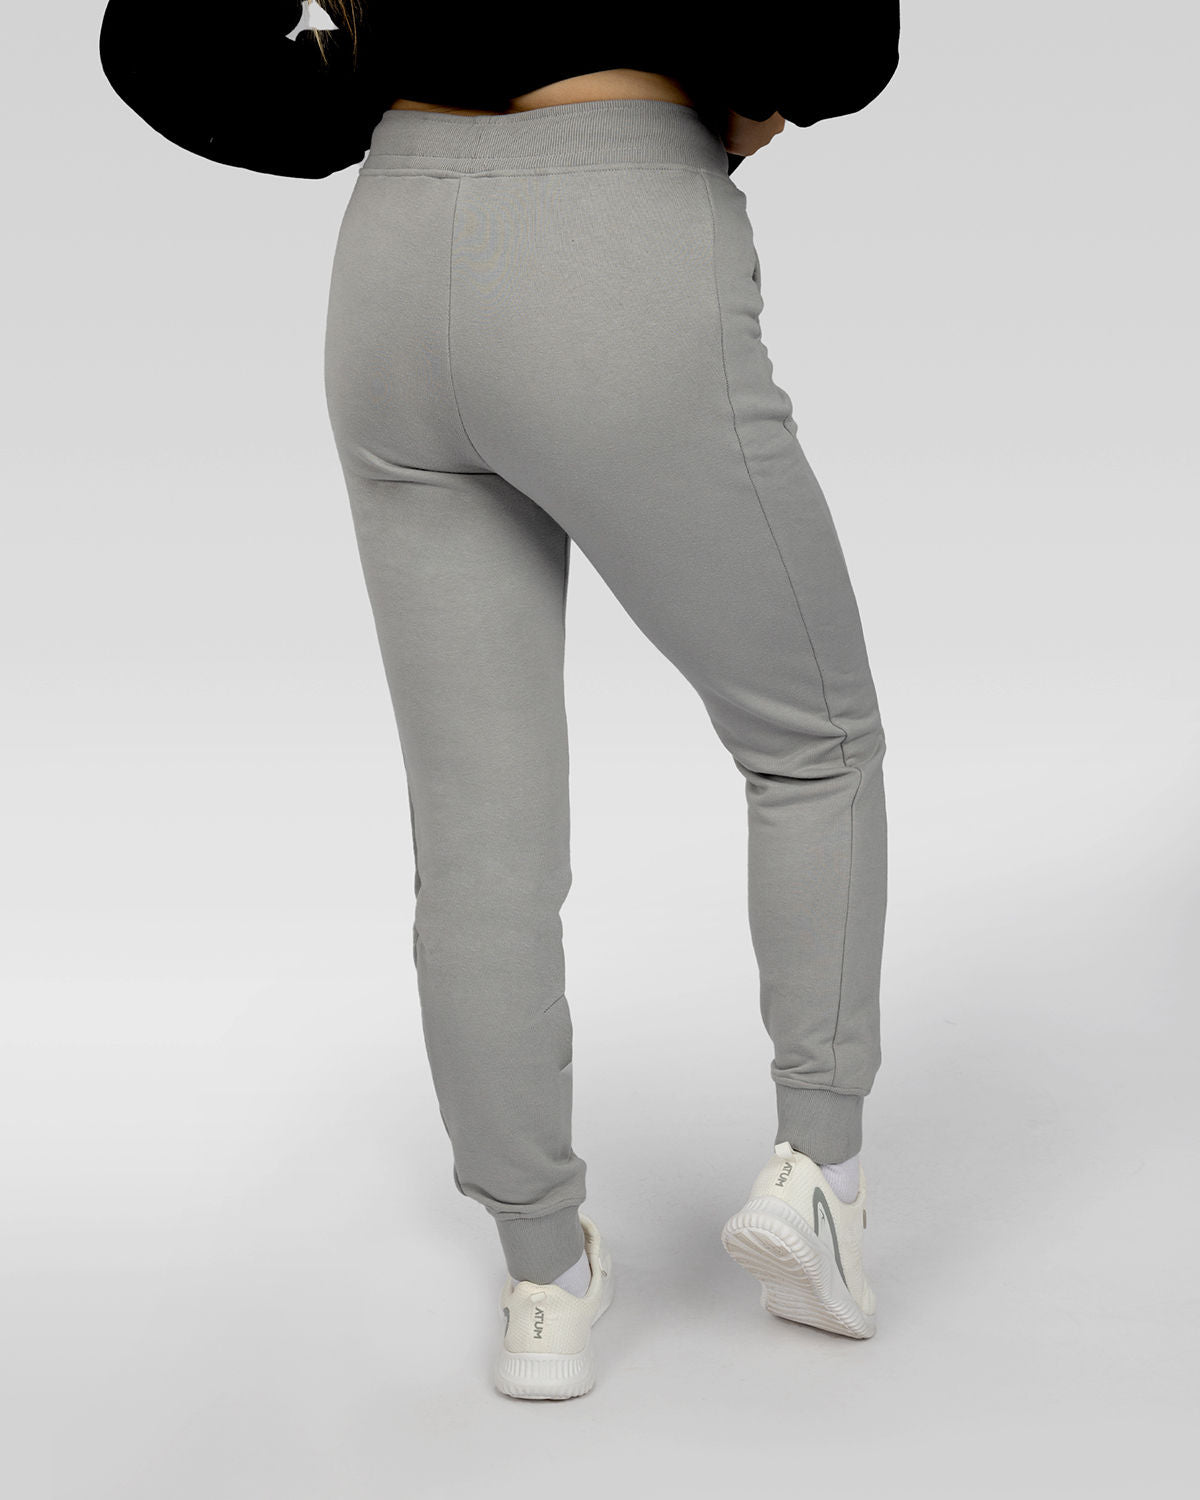 Photo by ð—”ð—§ð—¨ð— SPORTSWEAR Â® on December 20, 2022. May be an image of 1 woman wear gray sweatpants.